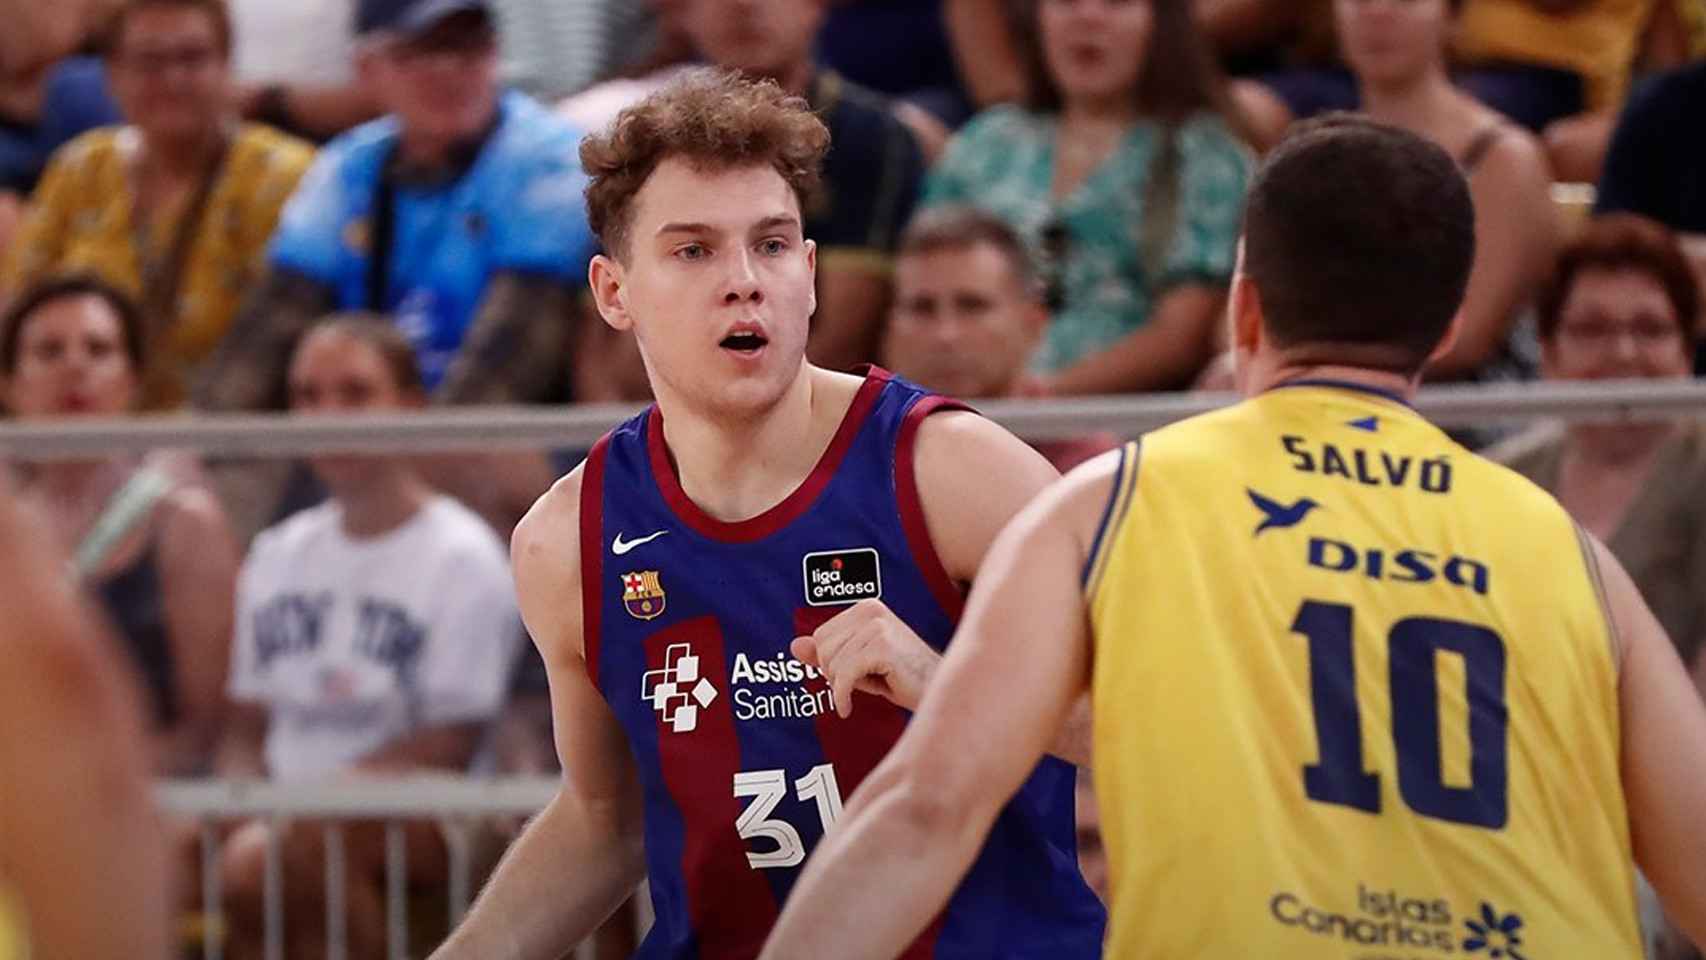 Rokas Jokubaitis lidera un ataque del Barça de basket contra el Gran Canaria